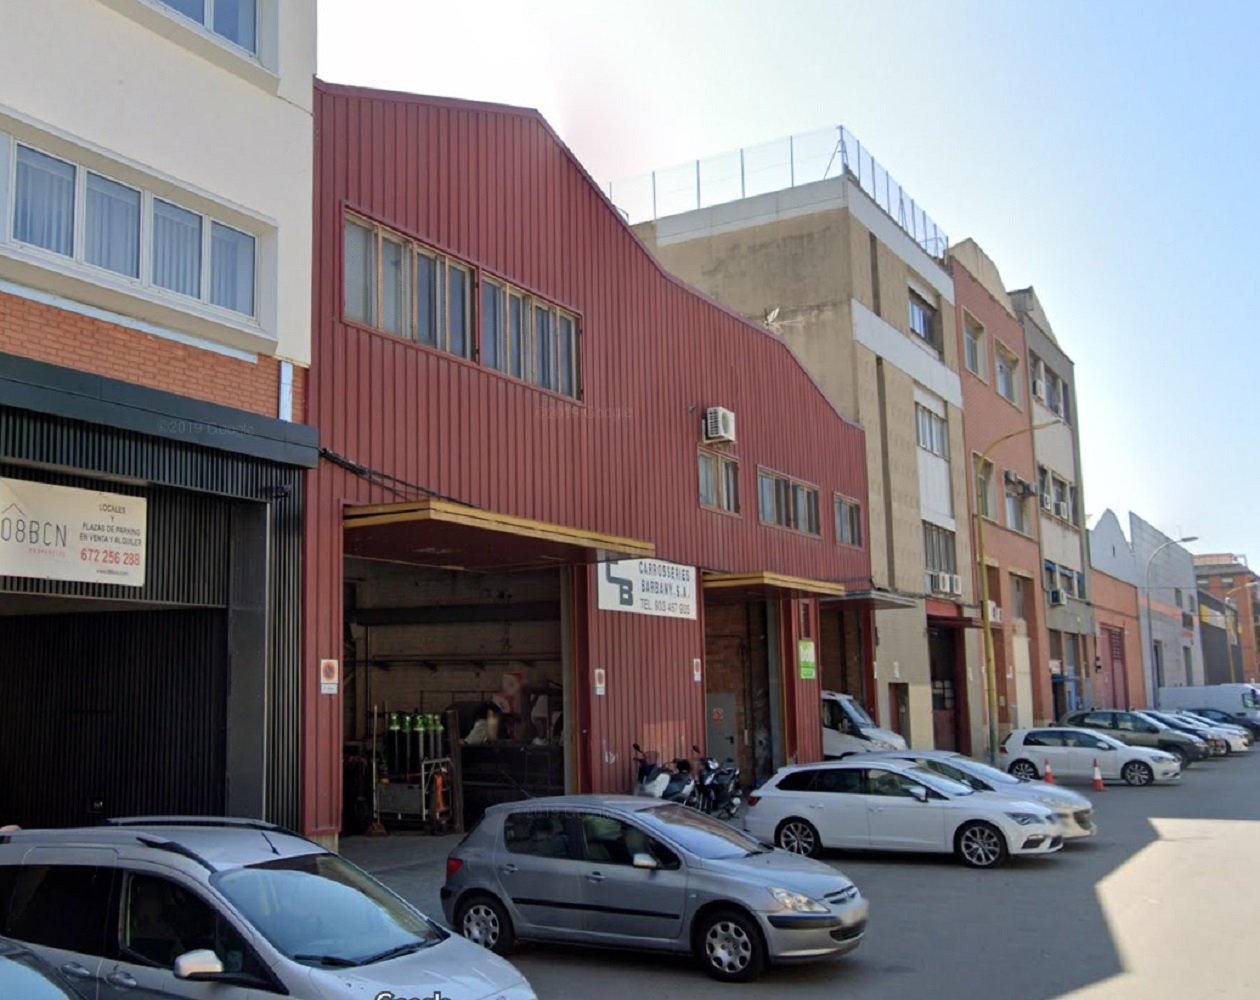 L’Ajuntament de Barcelona compra dues naus industrials al Bon Pastor